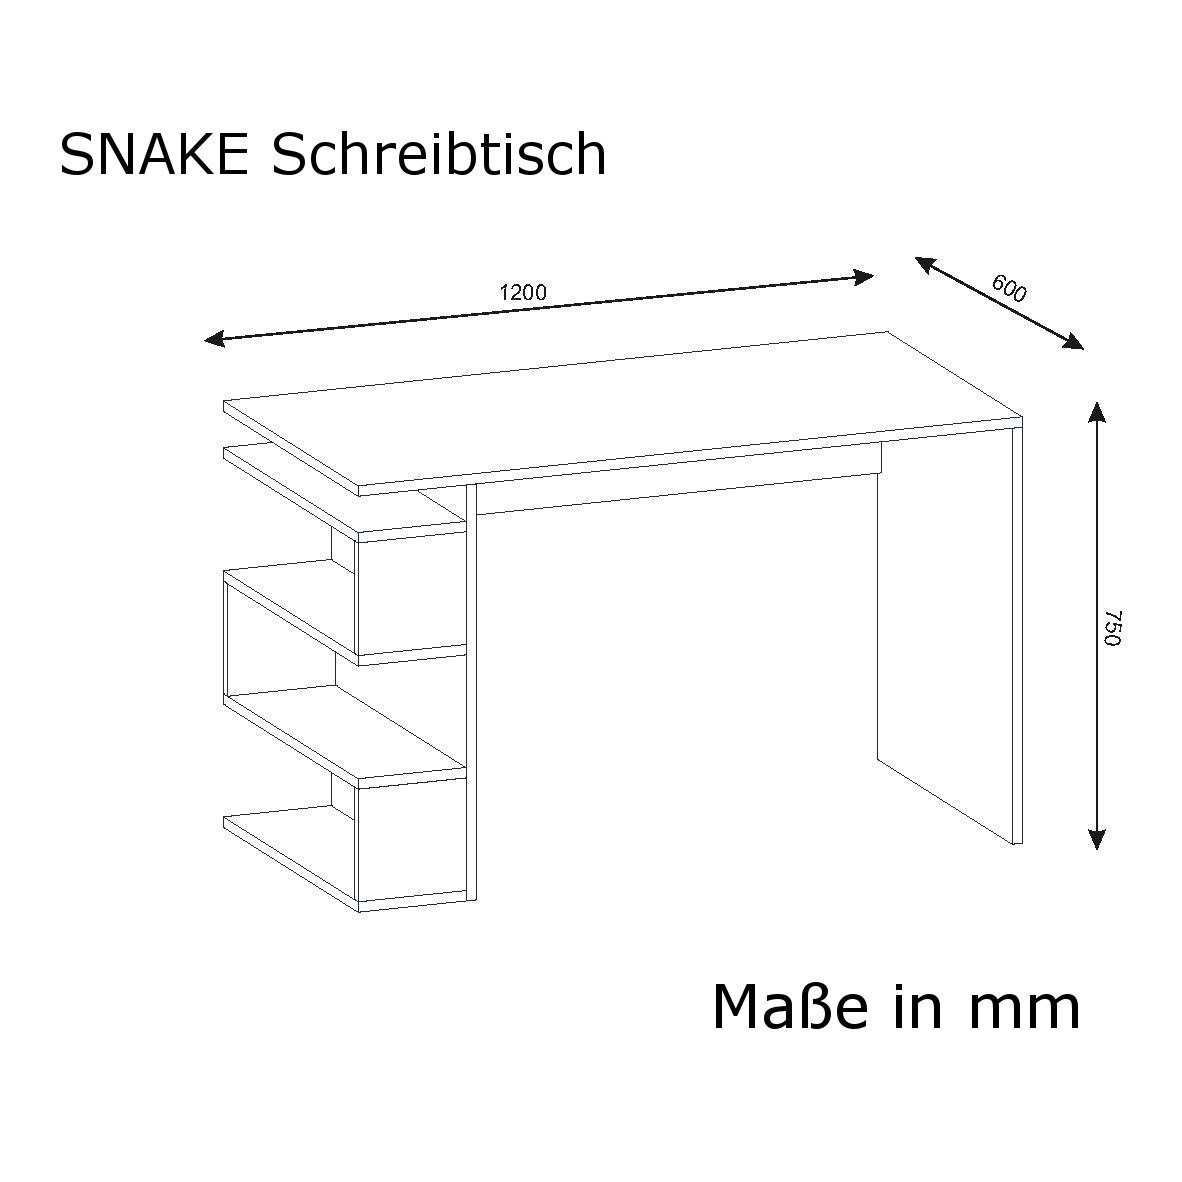 Schreibtisch Snake Weiss moebel17 Schreibtisch Walnuss